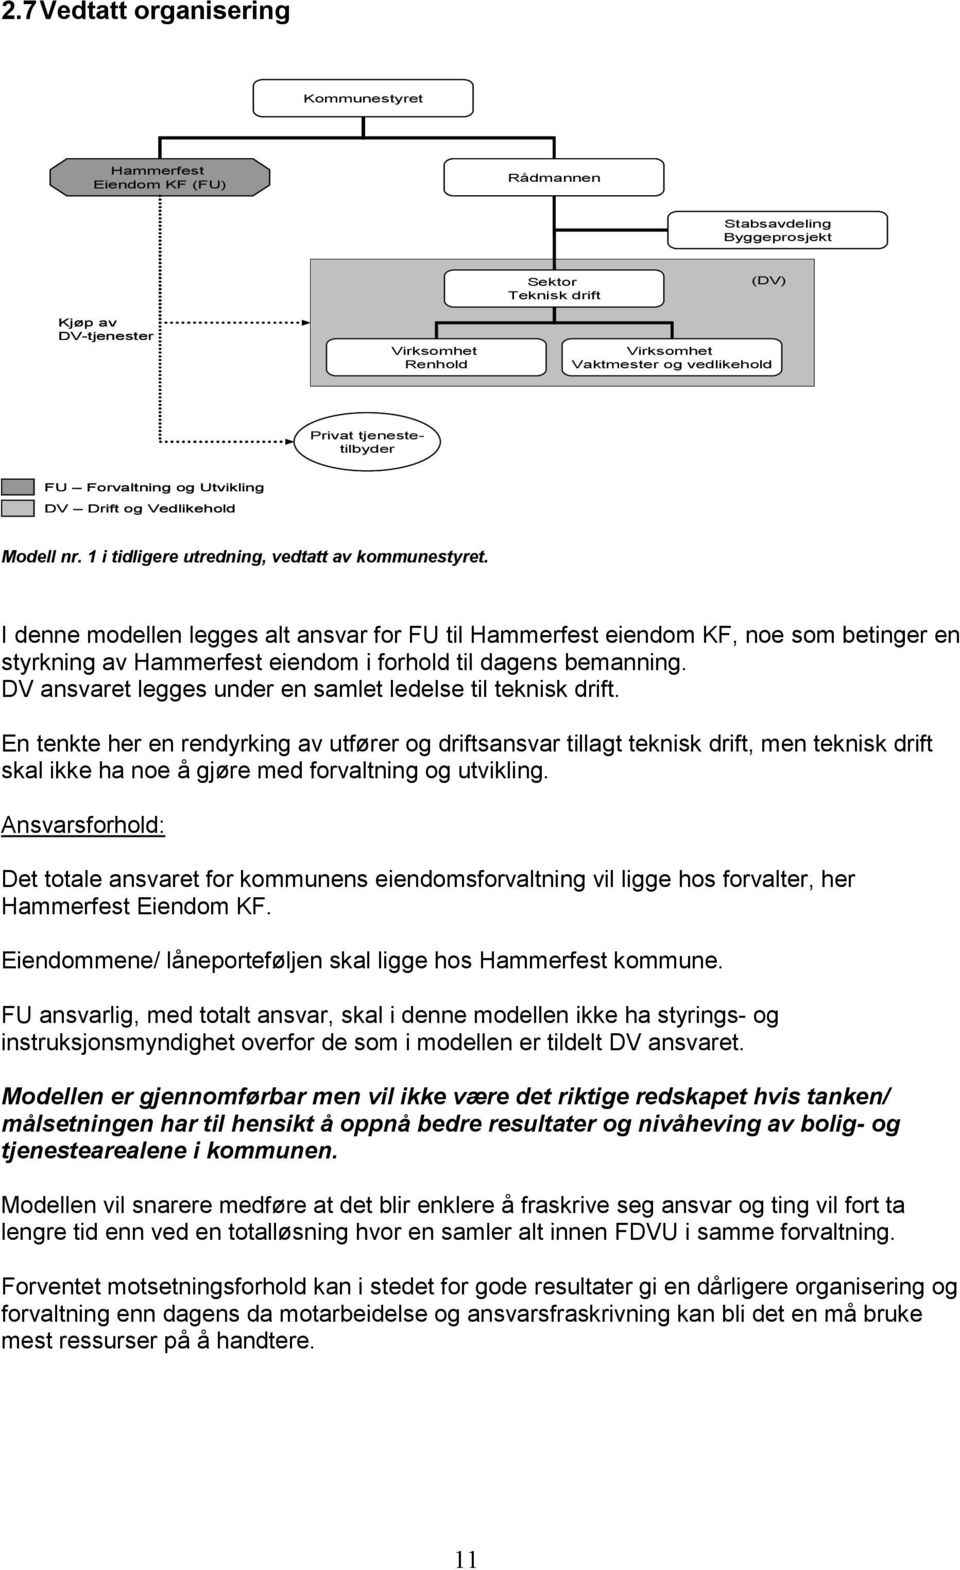 I denne modellen legges alt ansvar for FU til Hammerfest eiendom KF, noe som betinger en styrkning av Hammerfest eiendom i forhold til dagens bemanning.